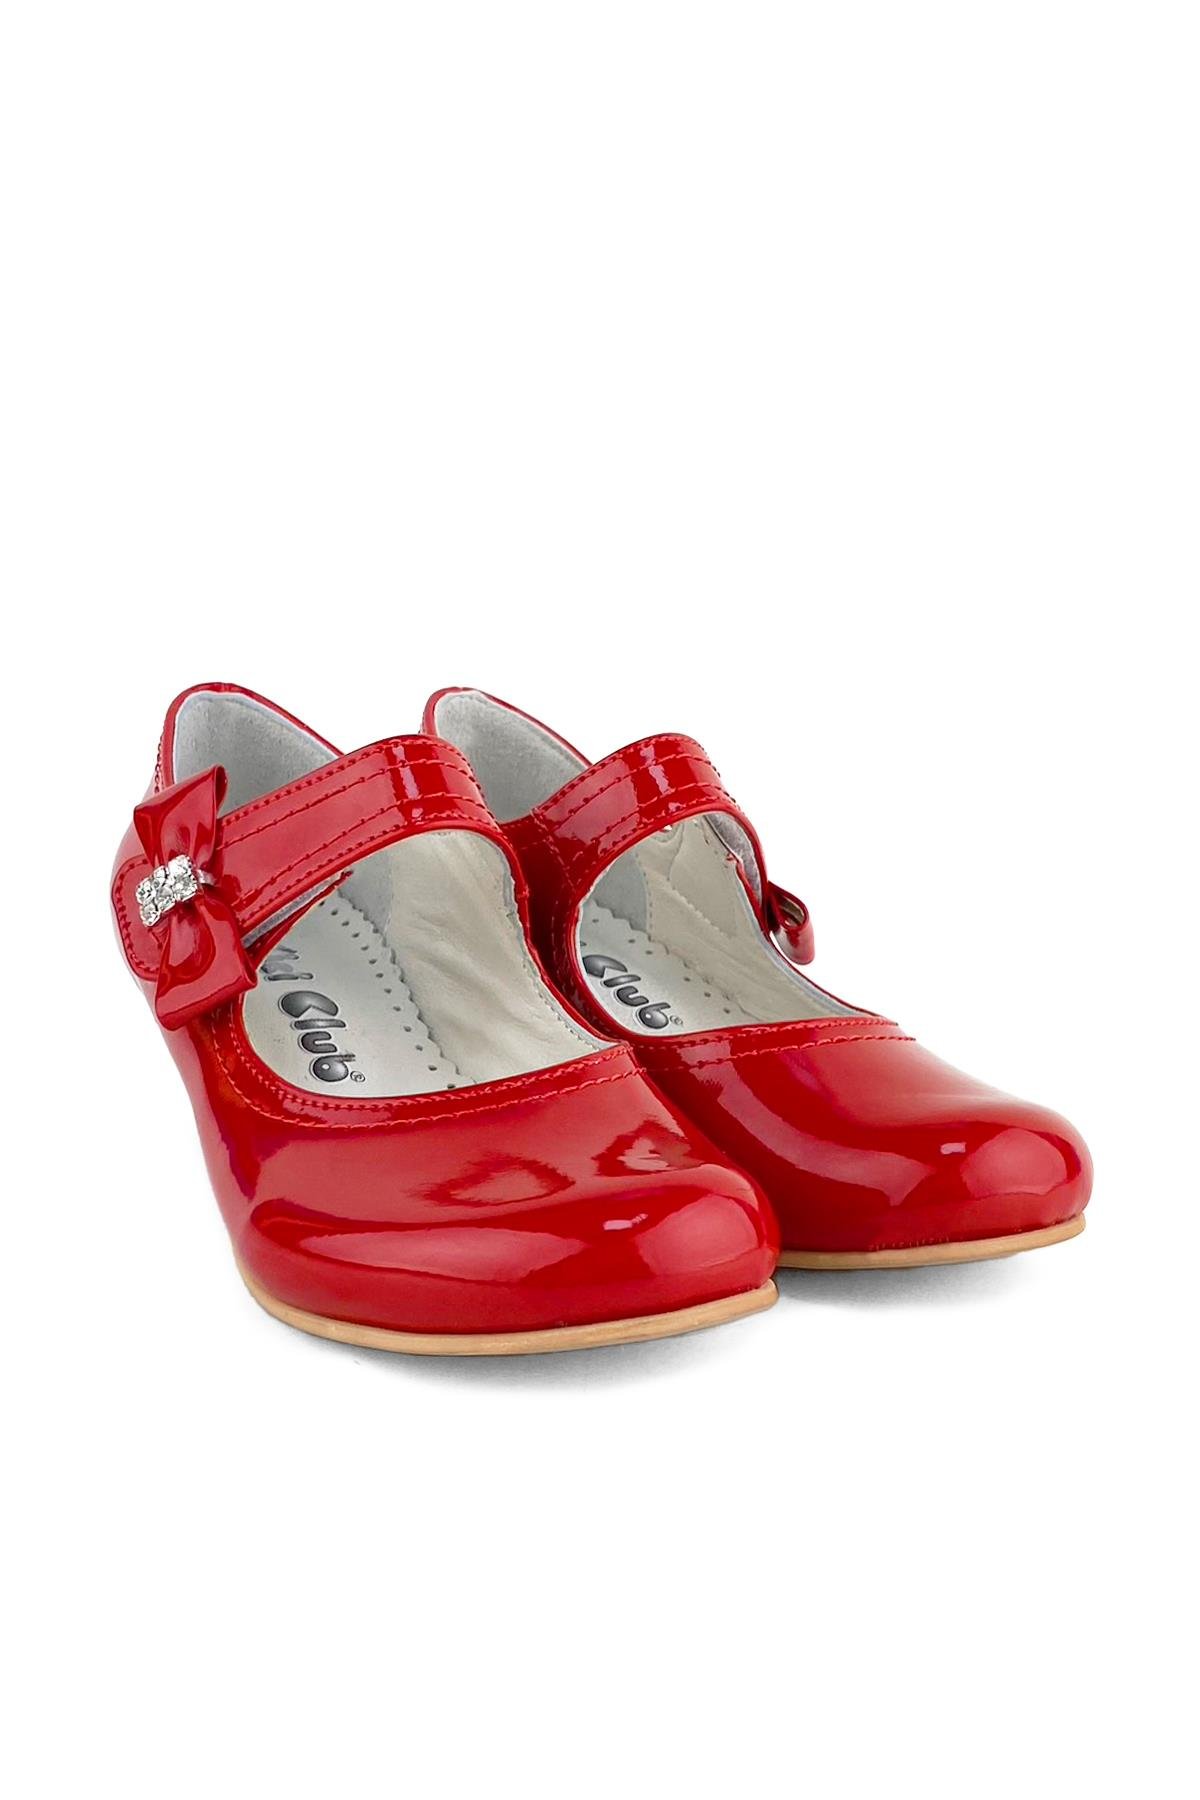 Bayrak Kırmızı Rugan Kız Çocuk Topuklu Abiye Ayakkabı